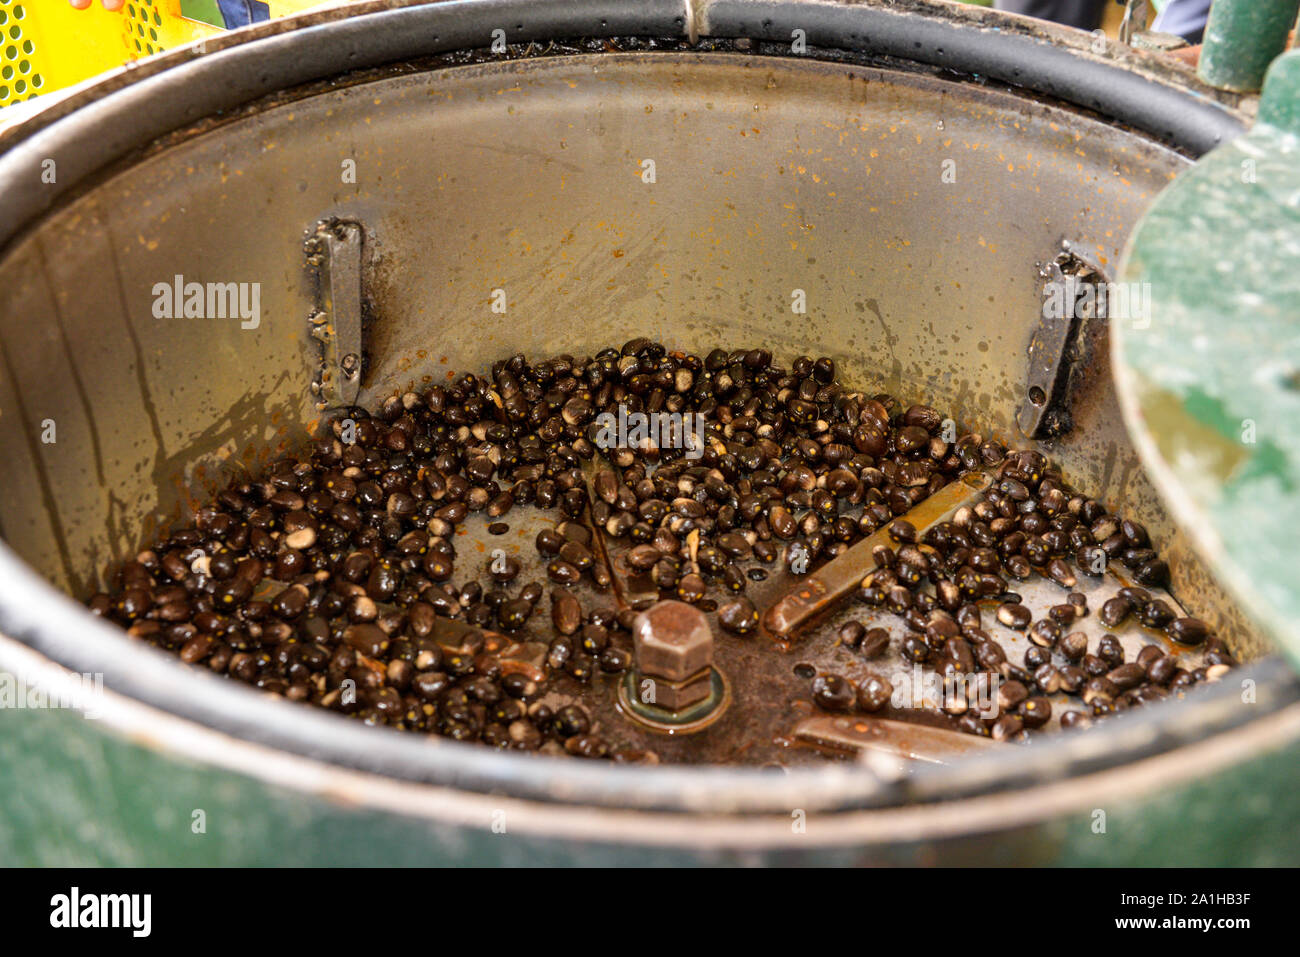 Oil palm nuts in a depulper machine after the depulper process complete. Stock Photo